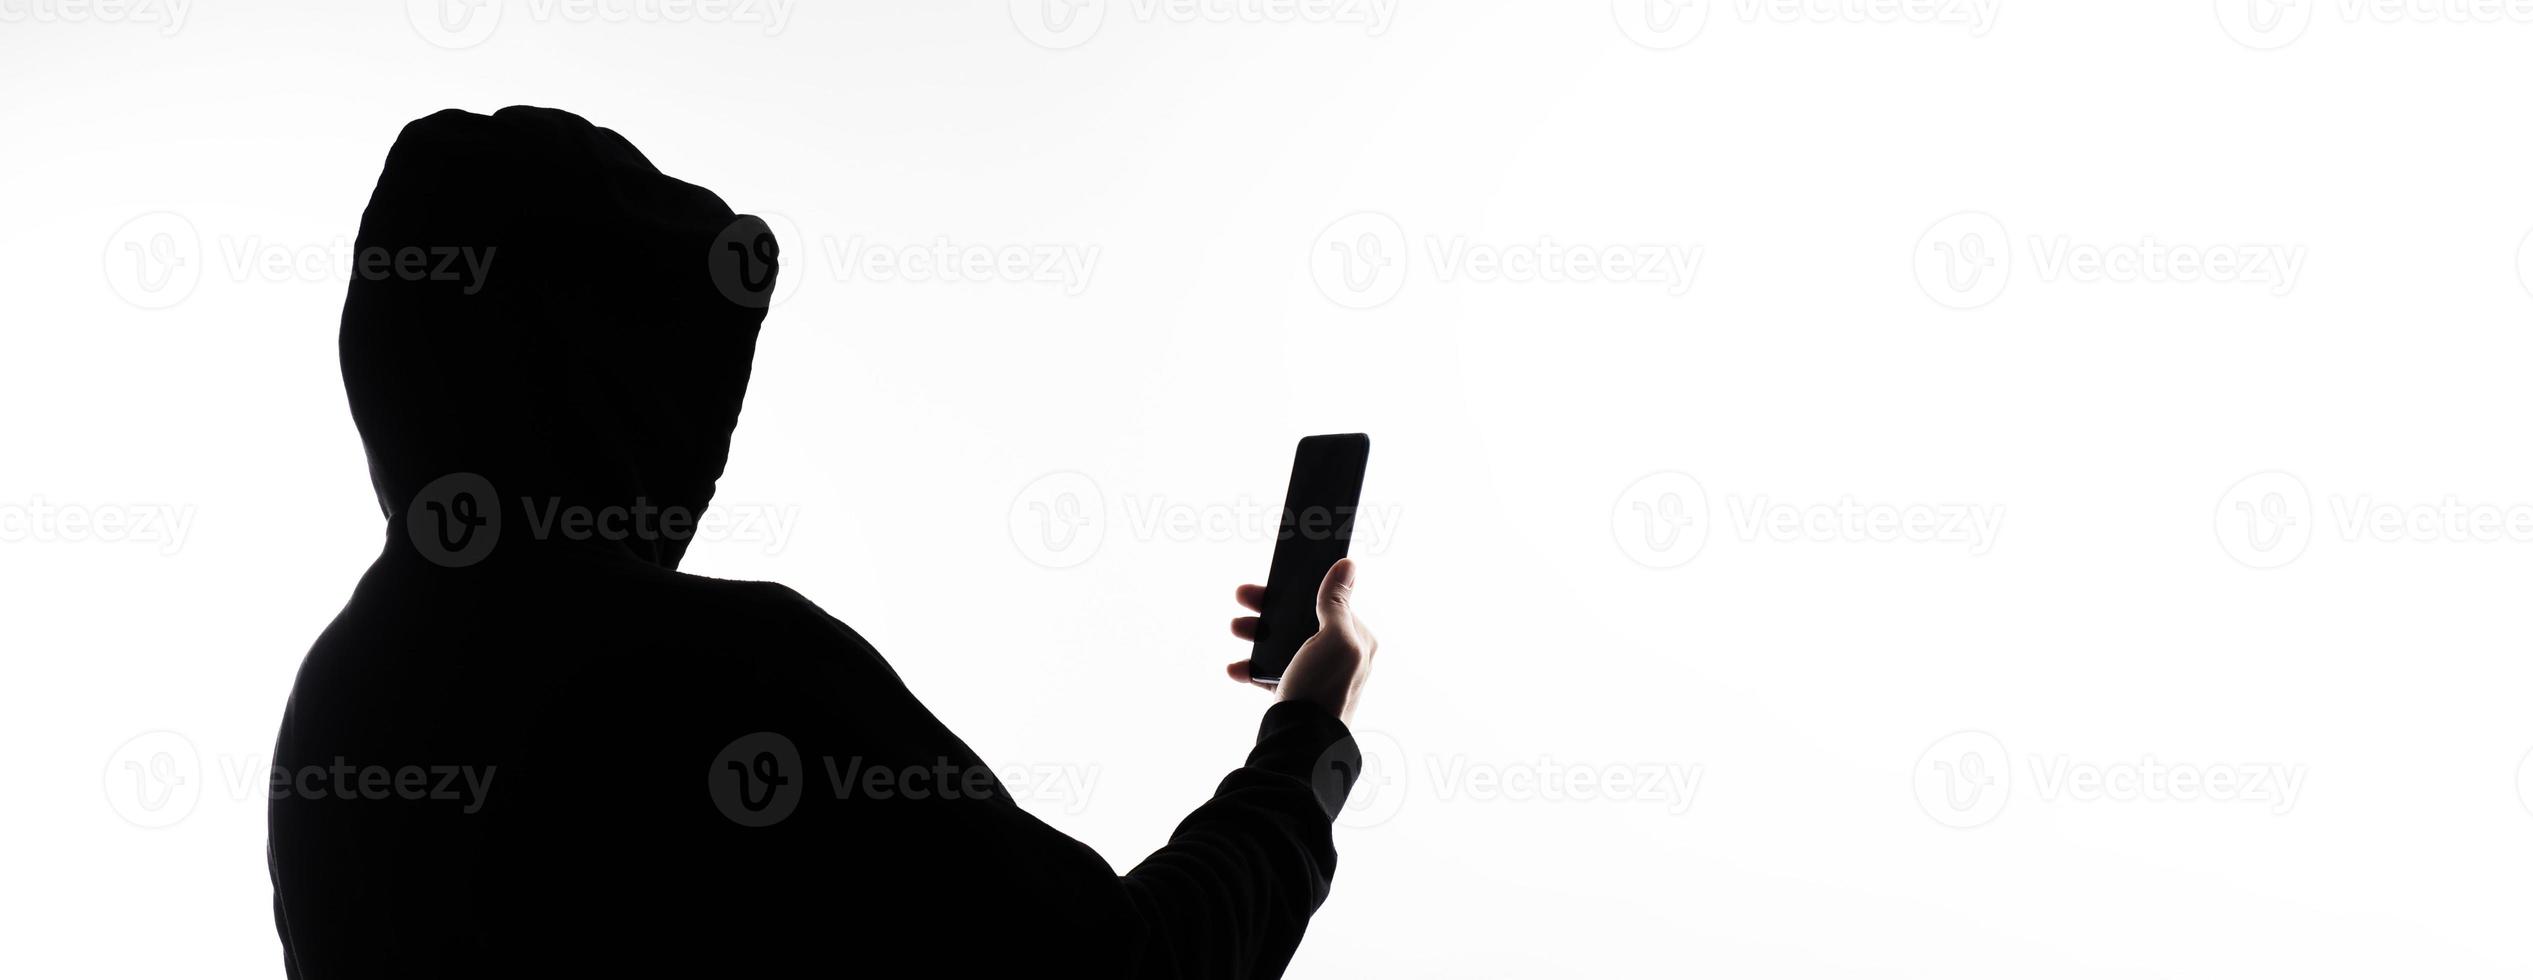 hacker anoniem en gezicht masker met smartphone in hand. Mens in zwart kap overhemd Holding en gebruik makend van mobiel telefoon Aan wit achtergrond. staan voor cyber misdrijf gegevens hacken of stelen persoonlijk gegevens concept foto